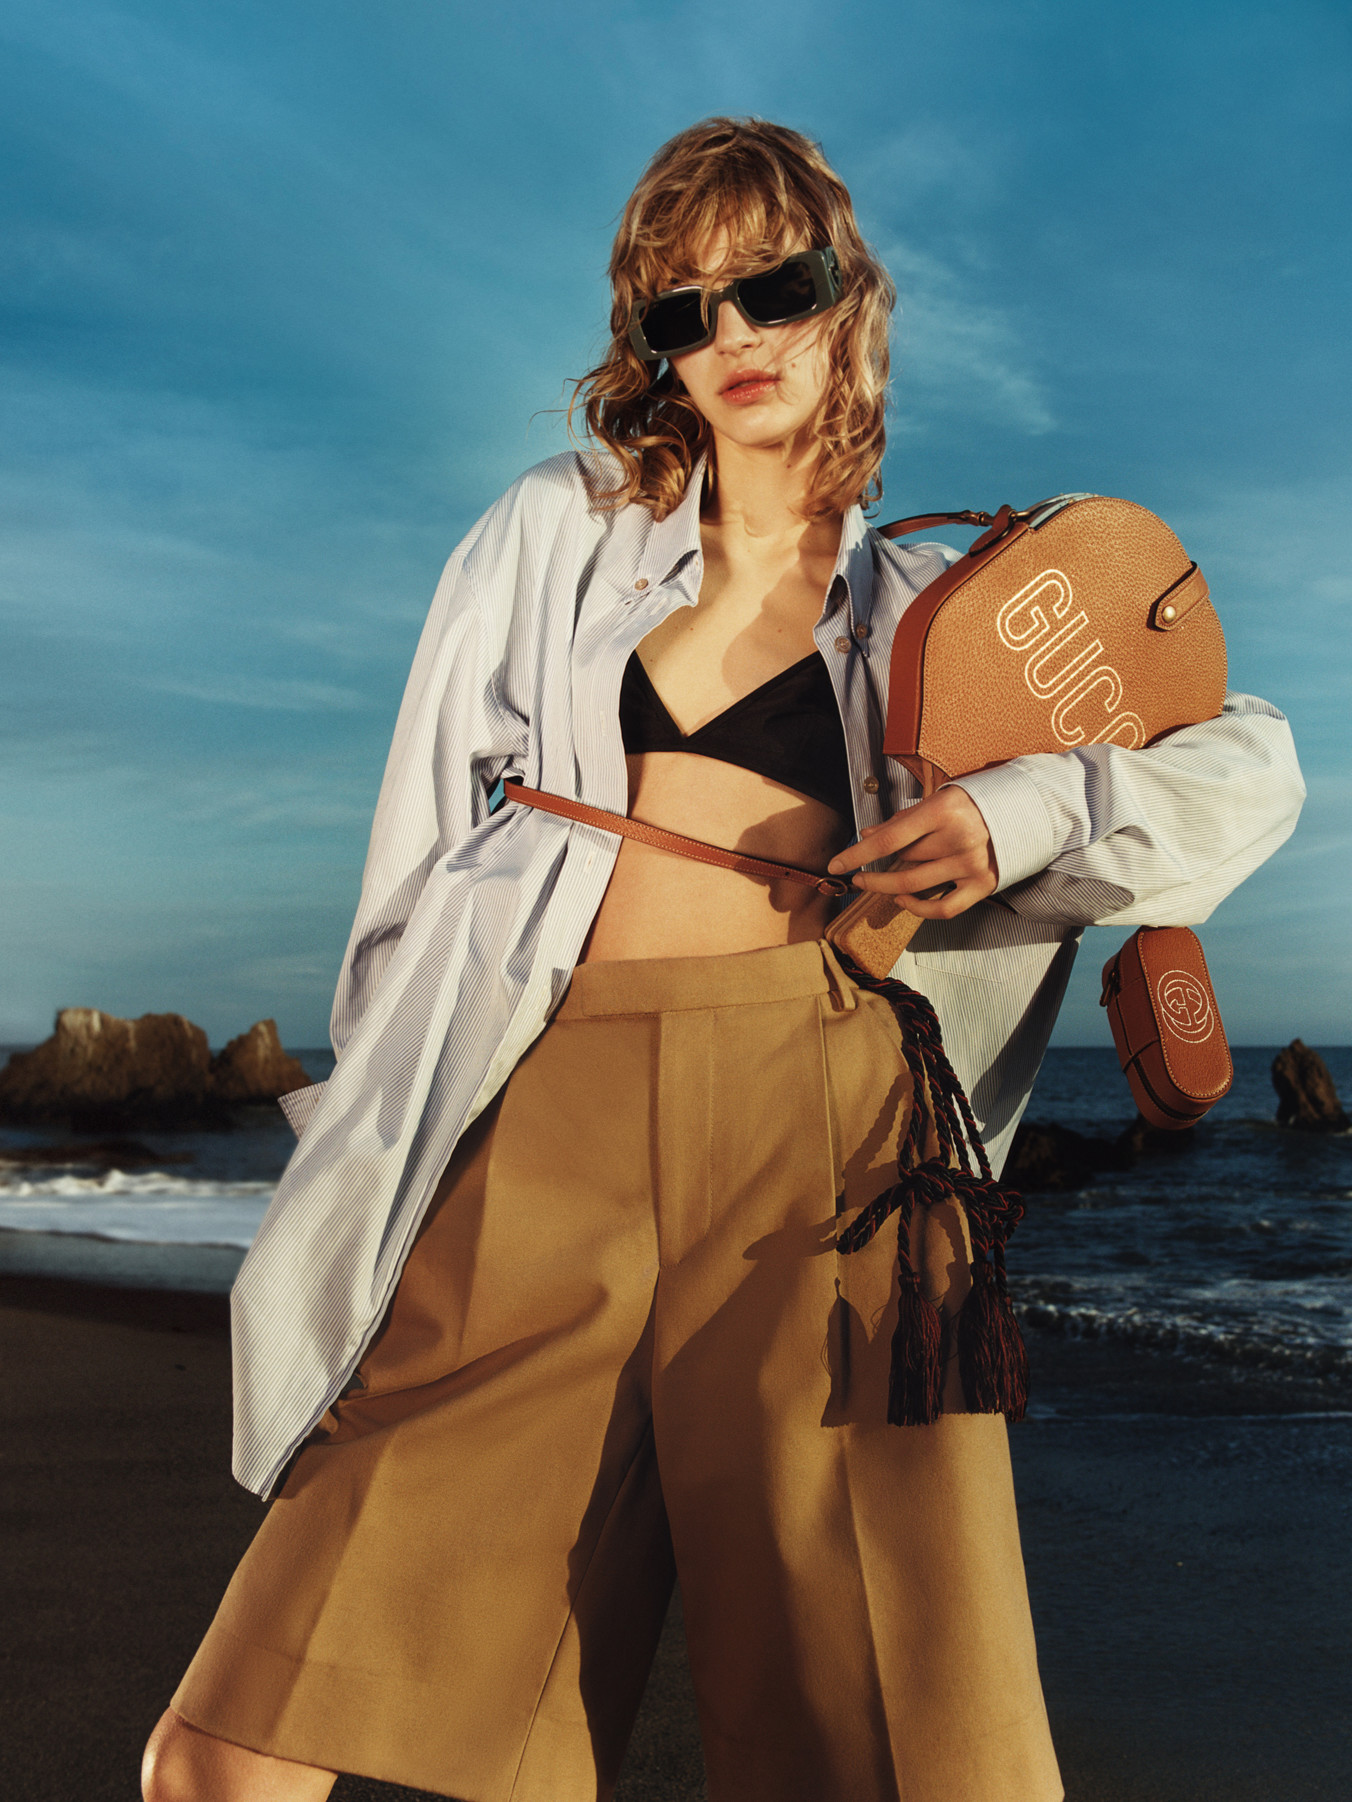 Una modelo sostiene una raqueta de playa con el logotipo de Gucci; lleva una camisa azul con botones, un bikini negro y pantalones cafés. Está en la playa.